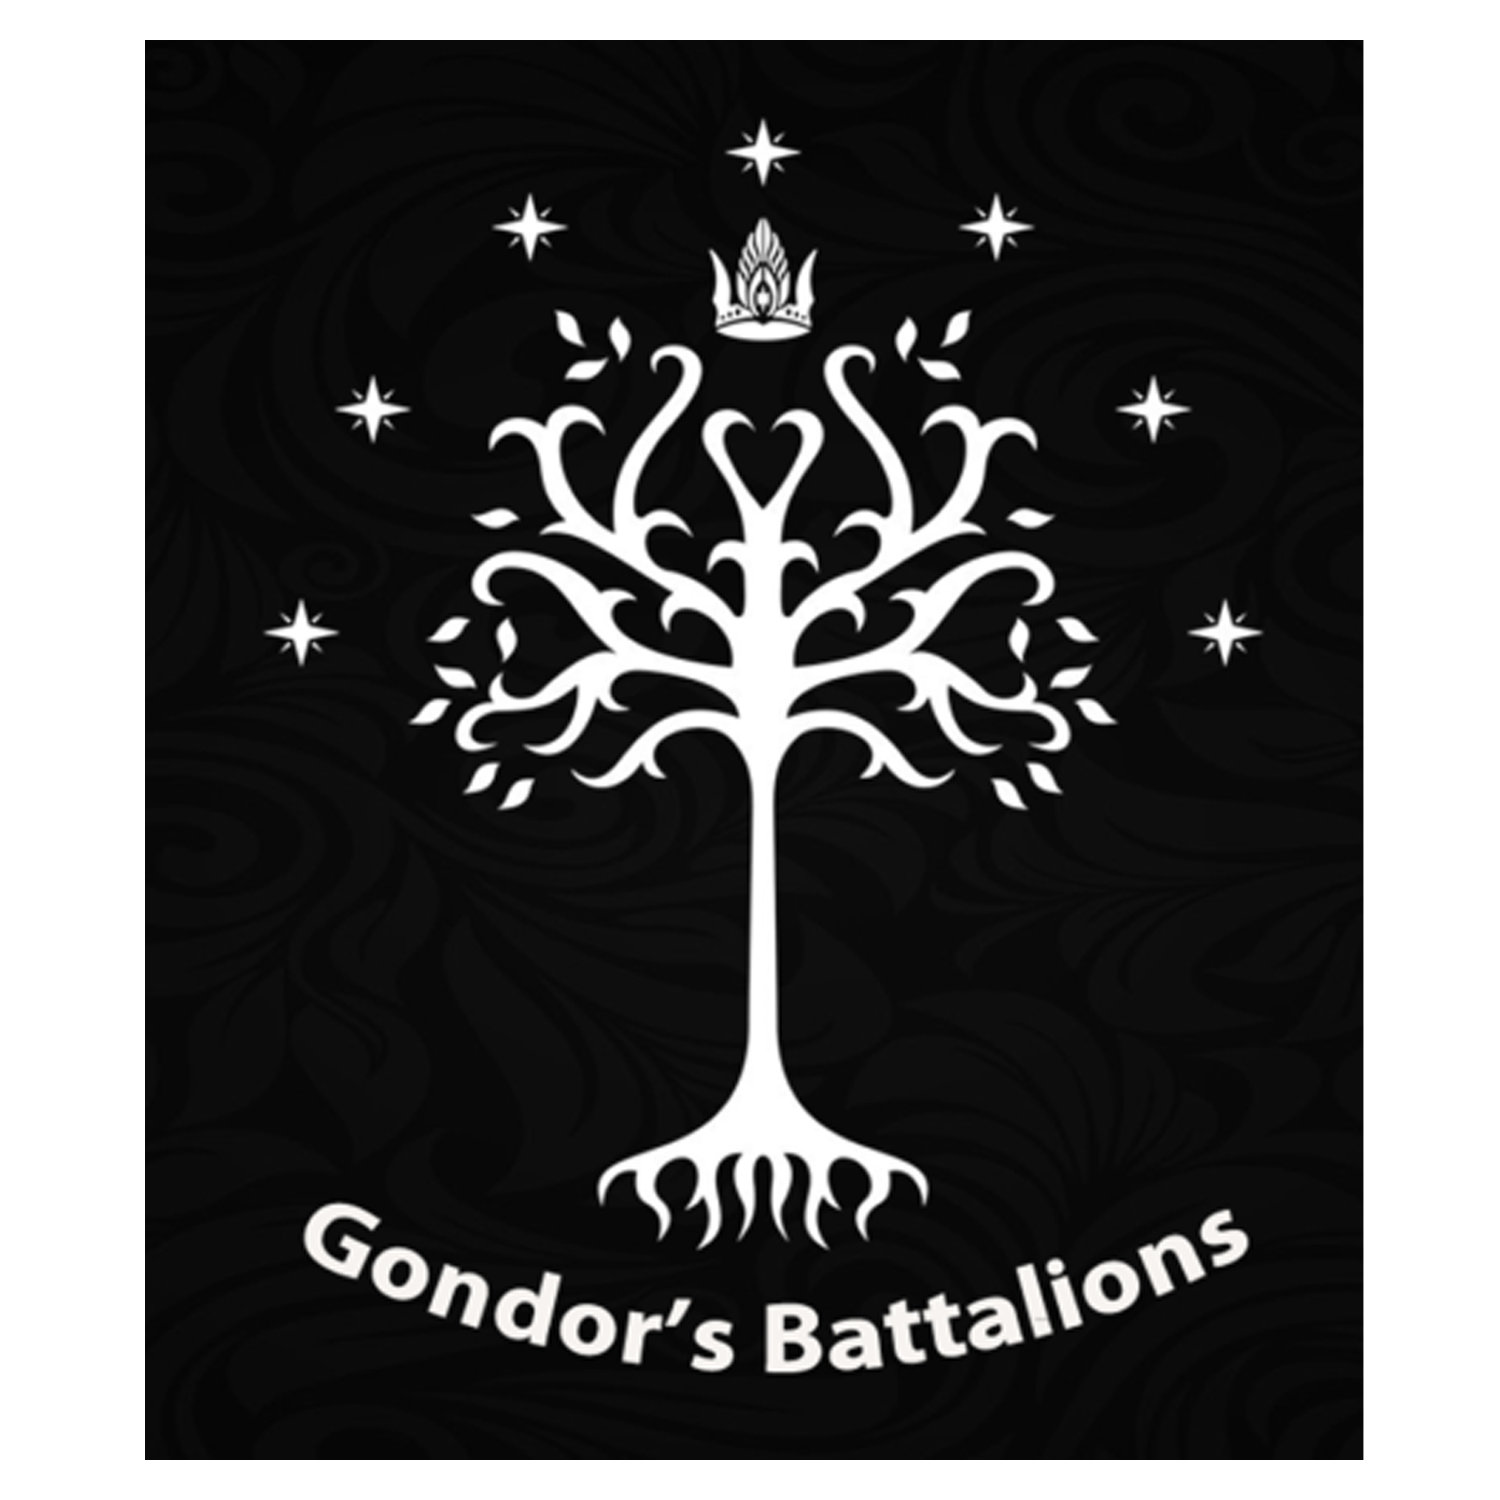 Gondor's Battalions